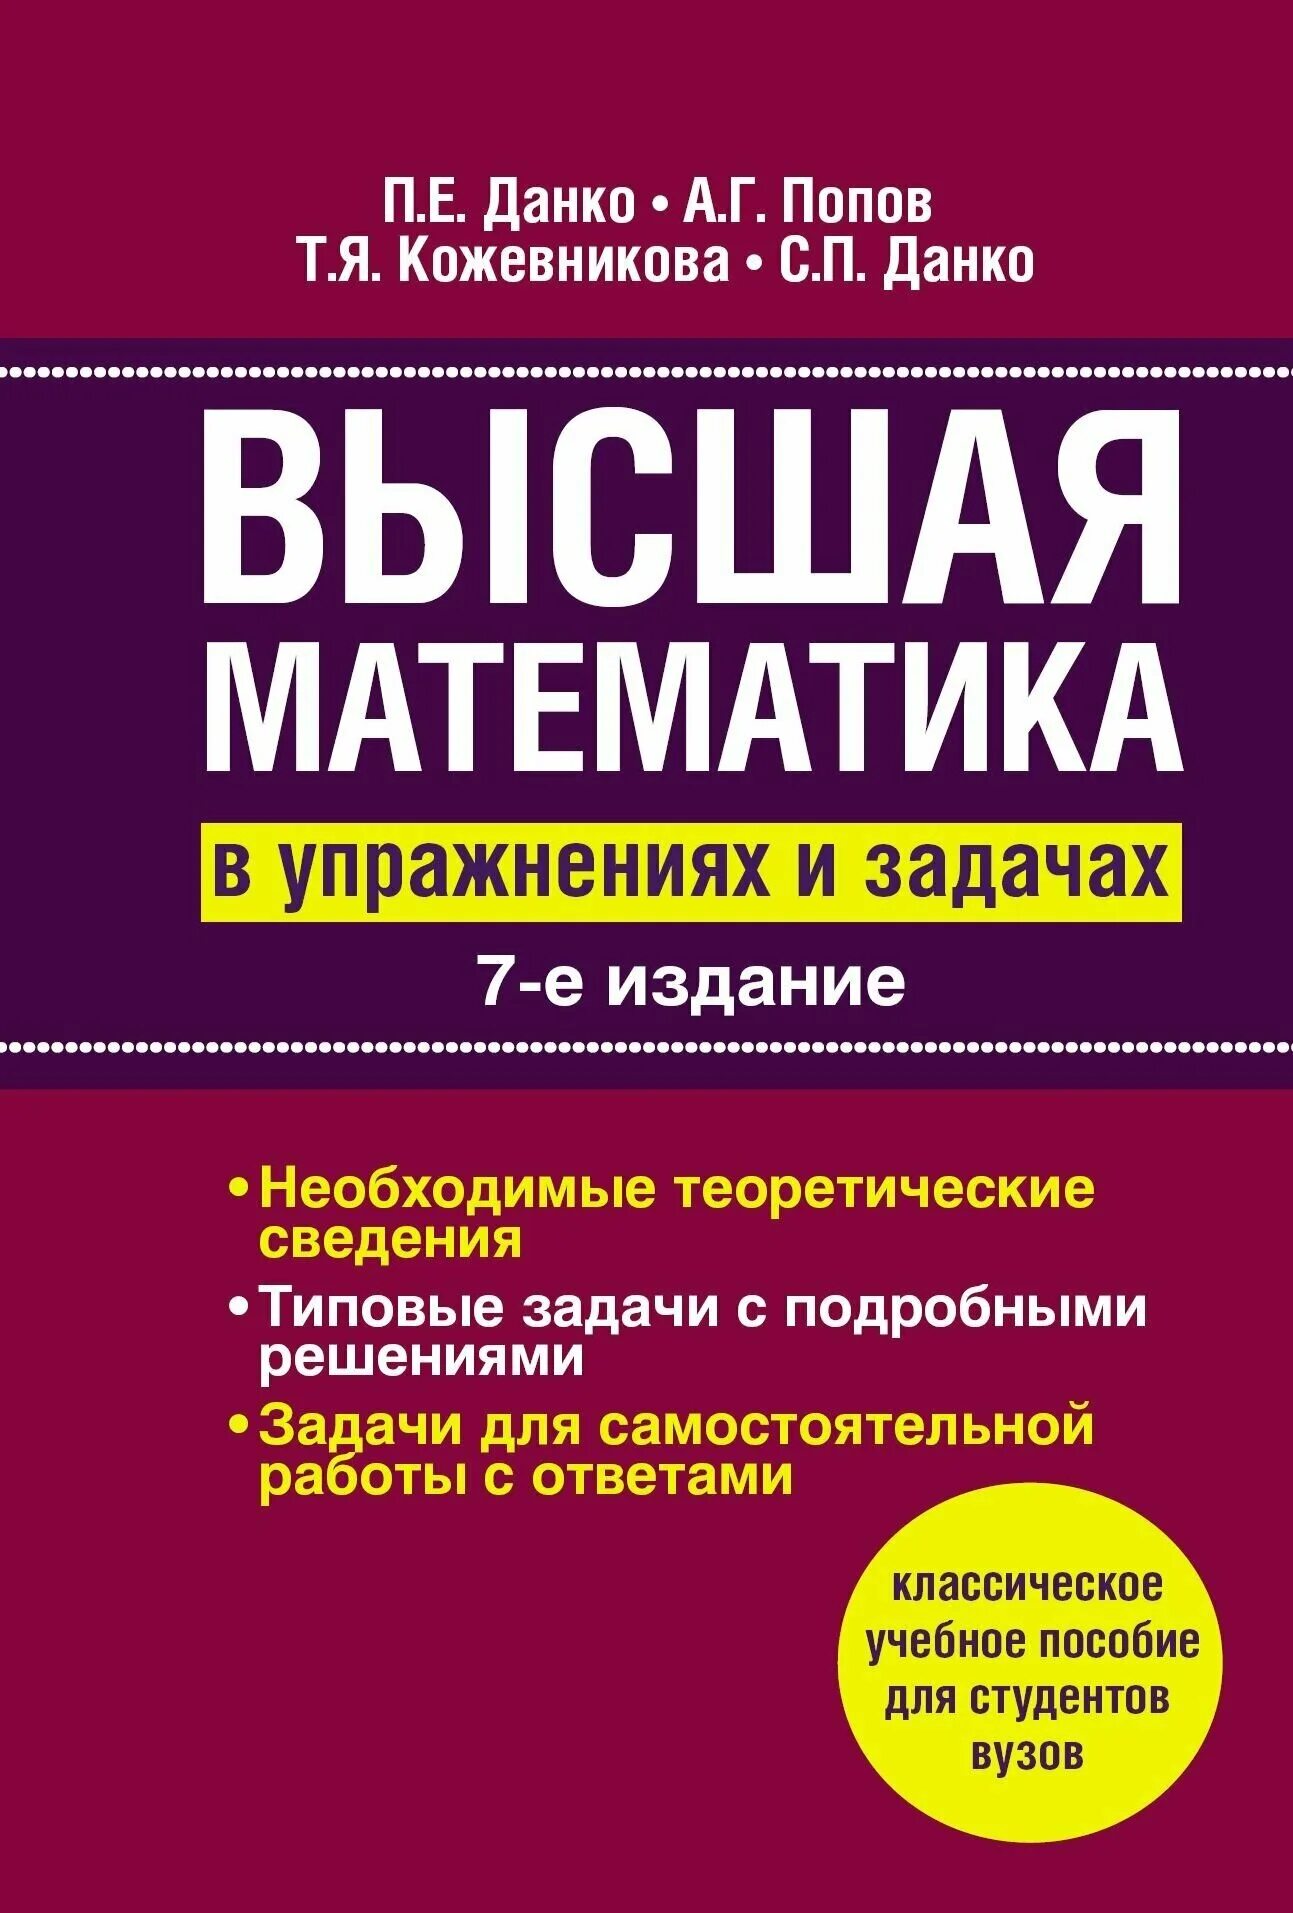 Высшая математика. Высшая математика Данко Попов Кожевникова. Высшая математика книга.